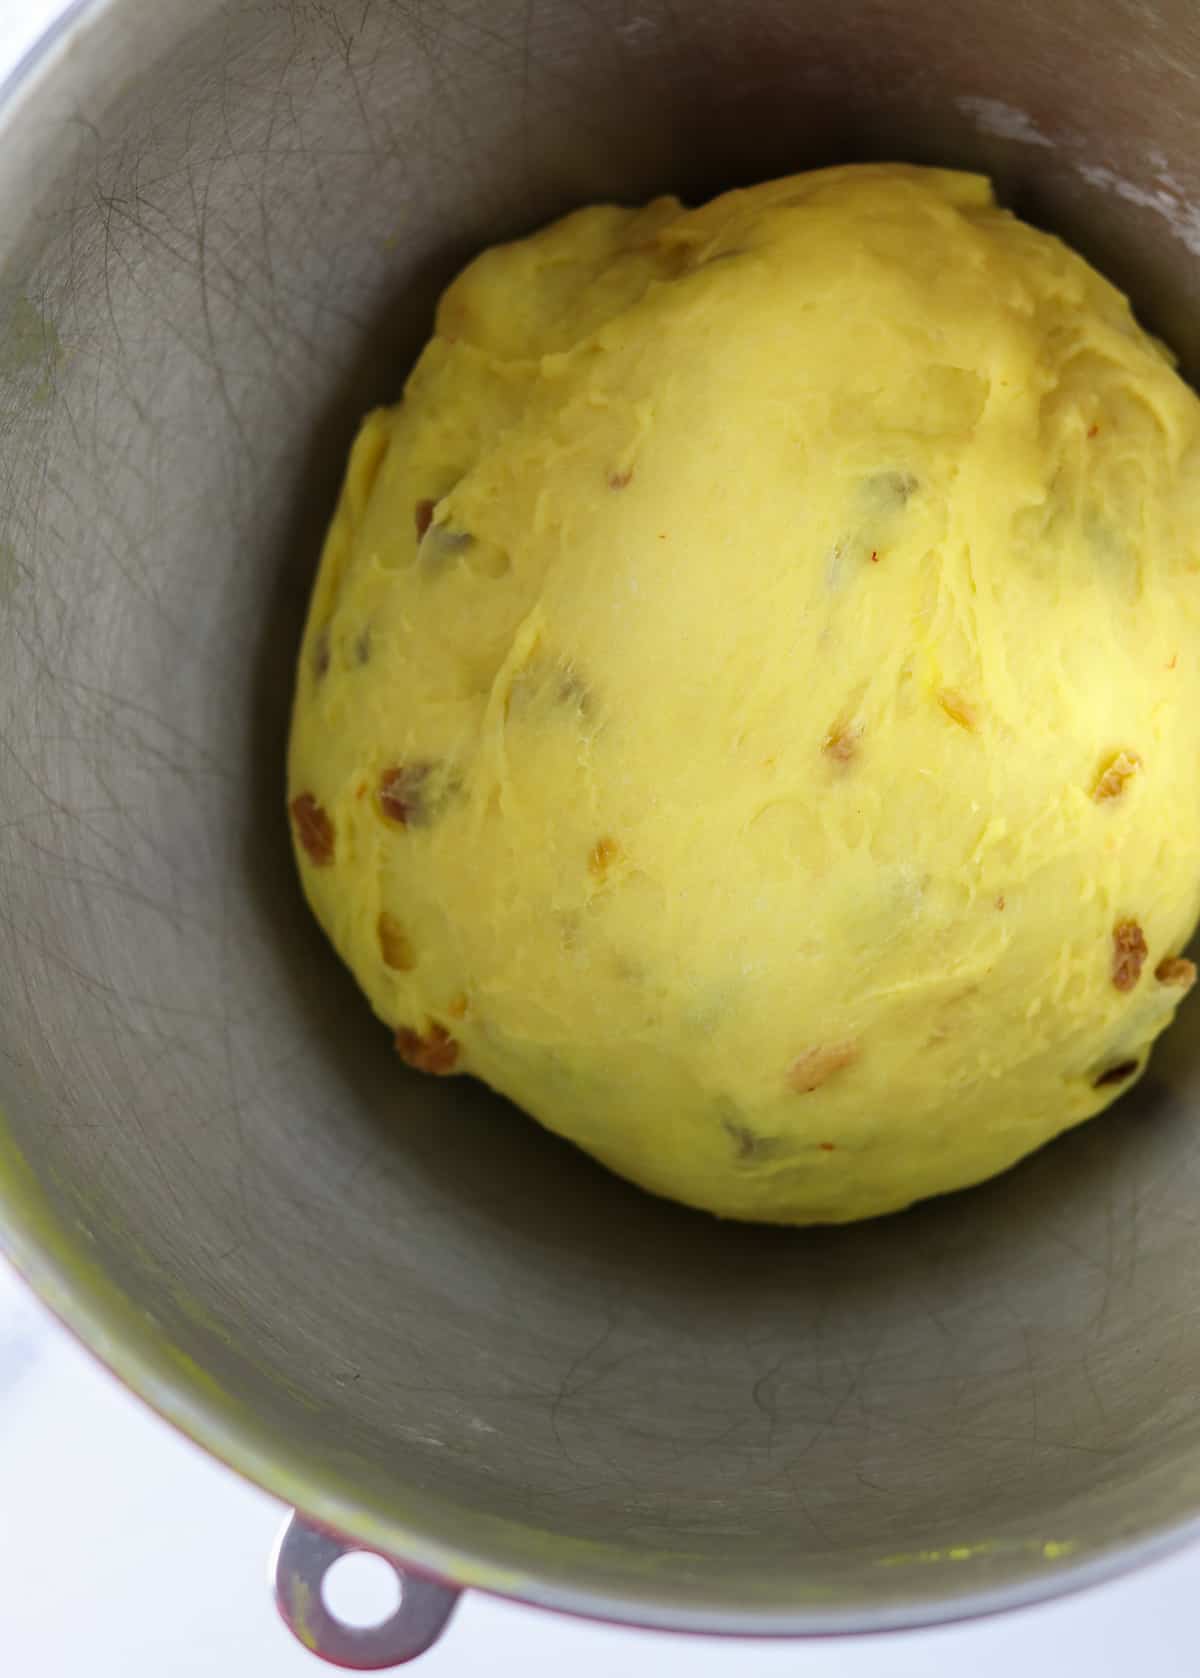 Saffron bread dough in a metal bowl.